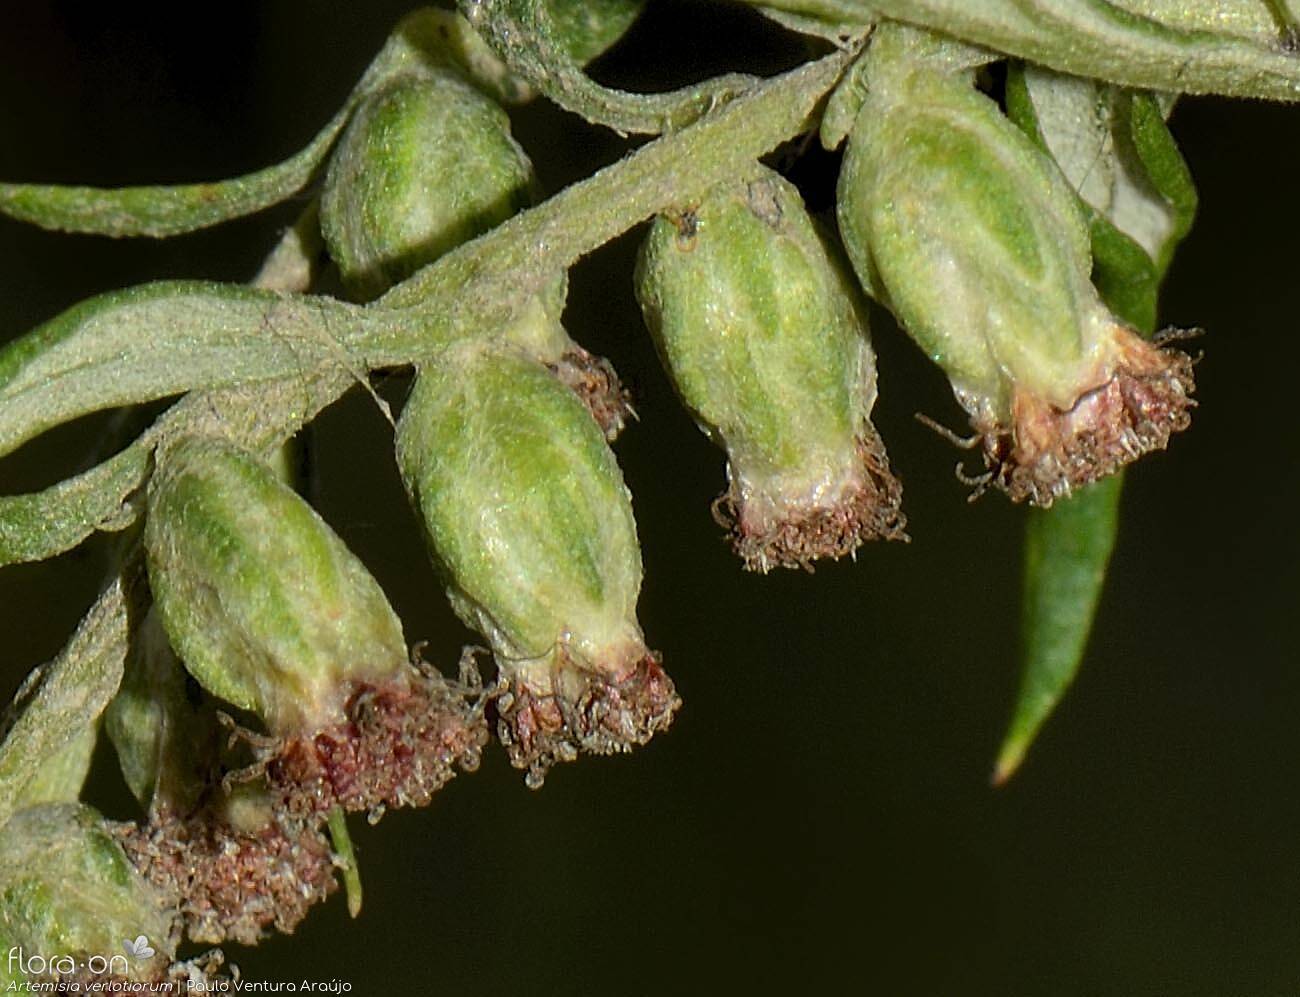 Artemisia verlotiorum - Capítulo | Paulo Ventura Araújo; CC BY-NC 4.0